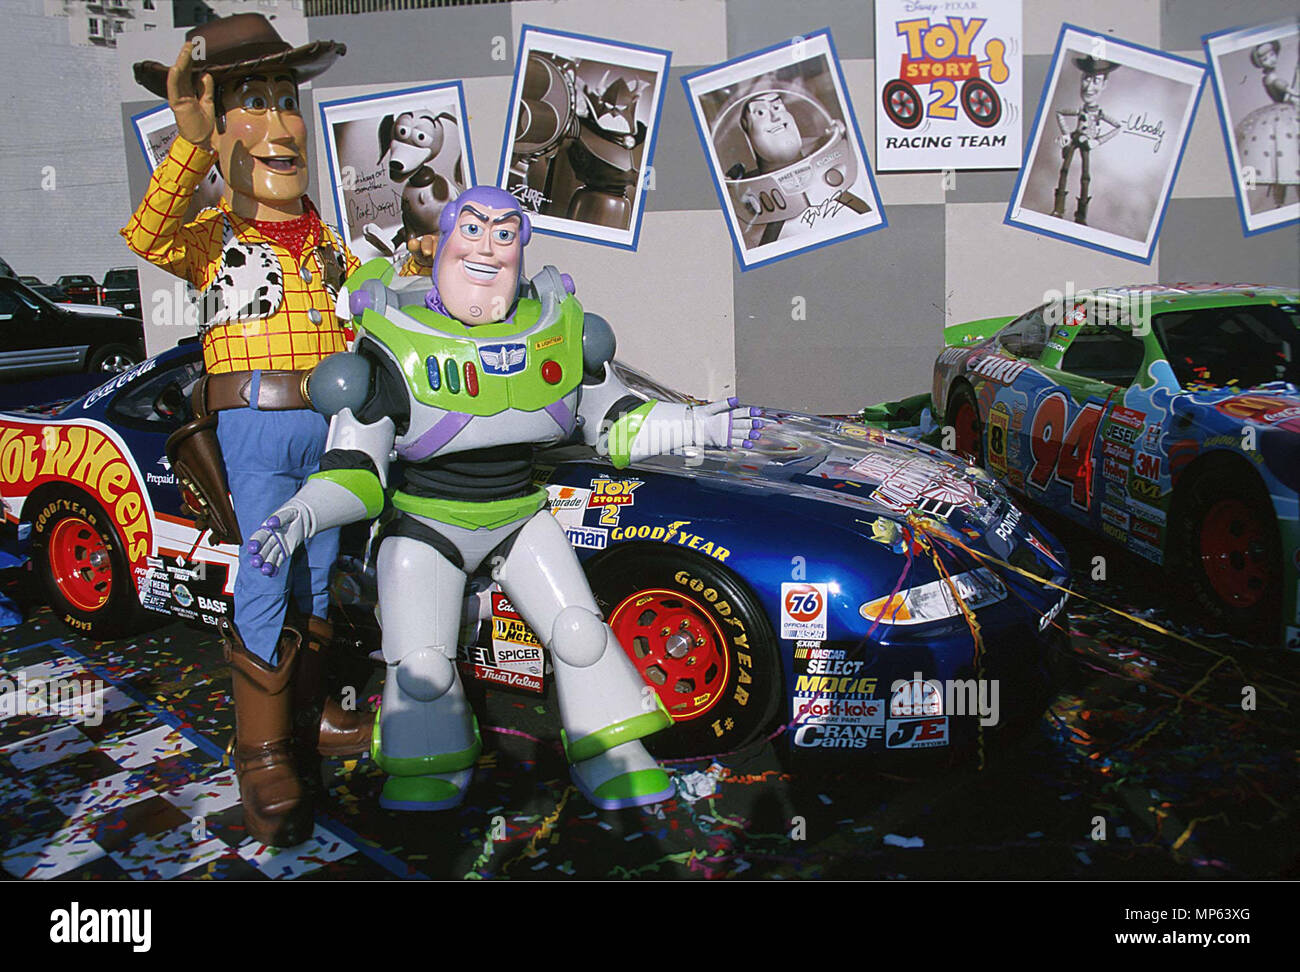 Woody & Buzz-Toy Story 2 - Woody & Buzz-Toy Story 2 événement dans la vie d'Hollywood, Californie - Red Carpet Event, USA, Cinéma, Célébrités, photographie, Bestof, Arts, Culture et divertissement, Célébrités, Mode Topix Meilleur de Hollywood, la vie, événement dans la vie d'Hollywood, Californie - Tapis rouge et en backstage, ,des stars, , Arts, Culture et divertissement, la photographie, les gens de la distribution, émission de télévision et tsuni@Gamma-USA.com , enquête en 1993 à 1999 personnes tous exprimés Banque D'Images